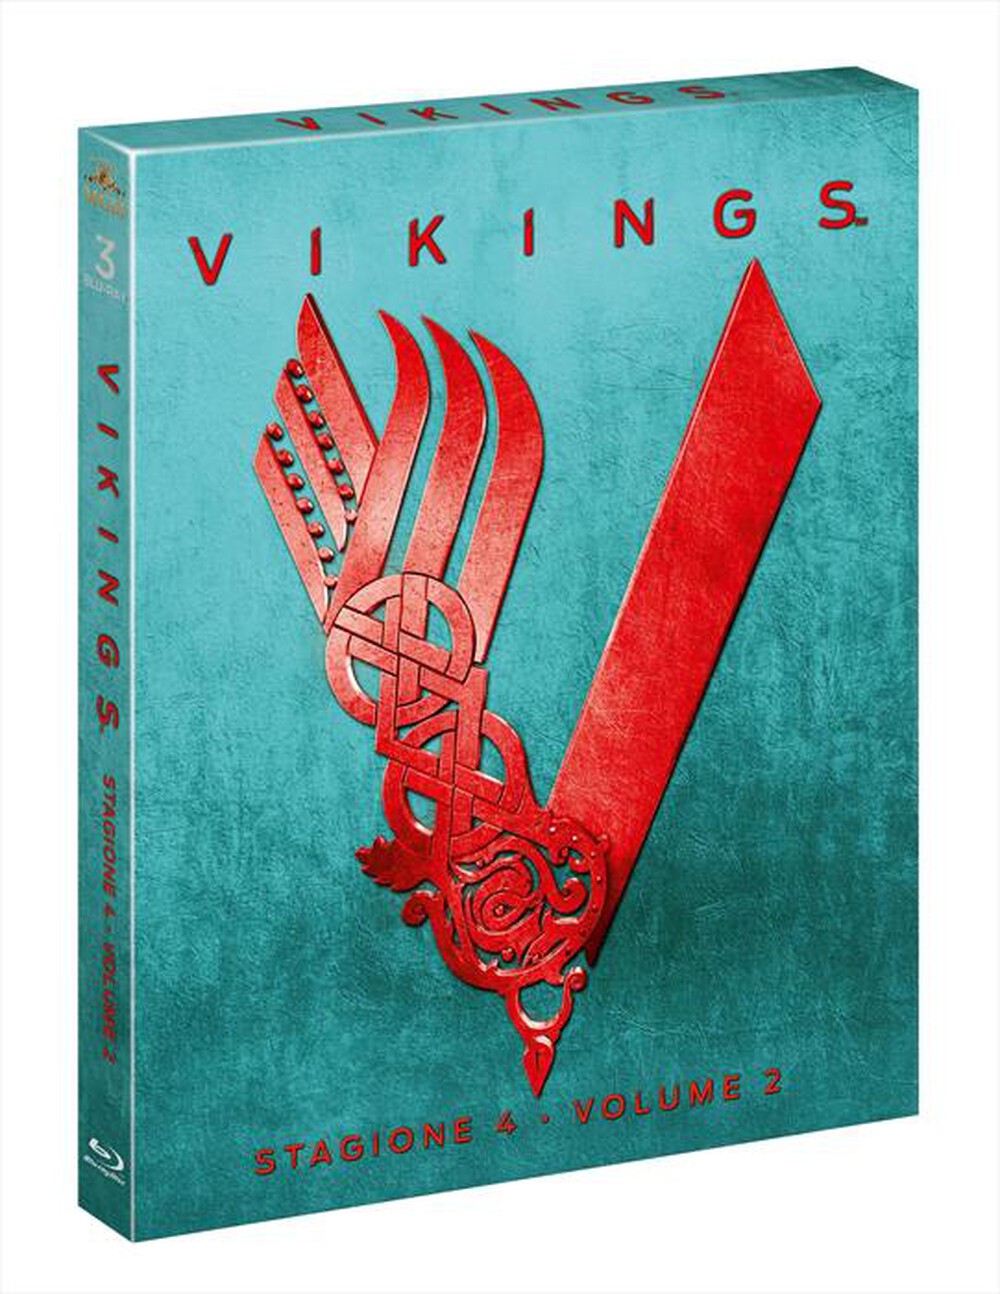 "Mgm - Vikings - Stagione 04 #02 (3 Blu-Ray)"